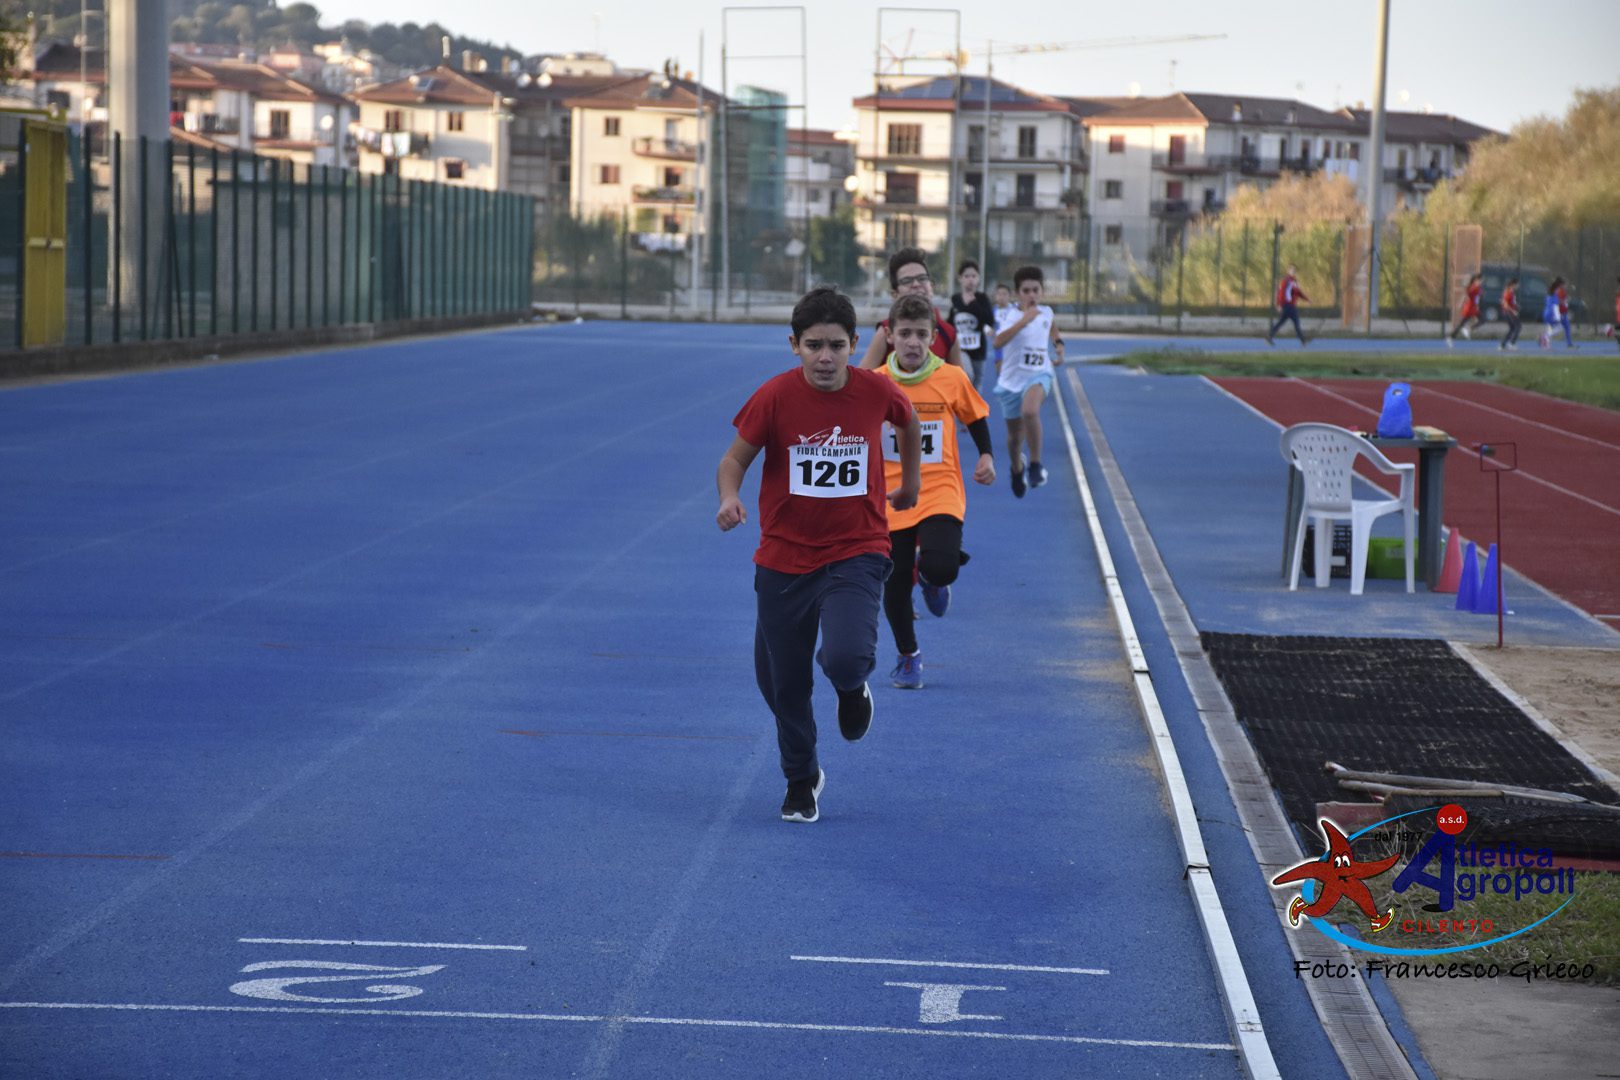 Atletica Agropoli riparte dai piccoli, tecnici e istruttori pronti al Campus estivo